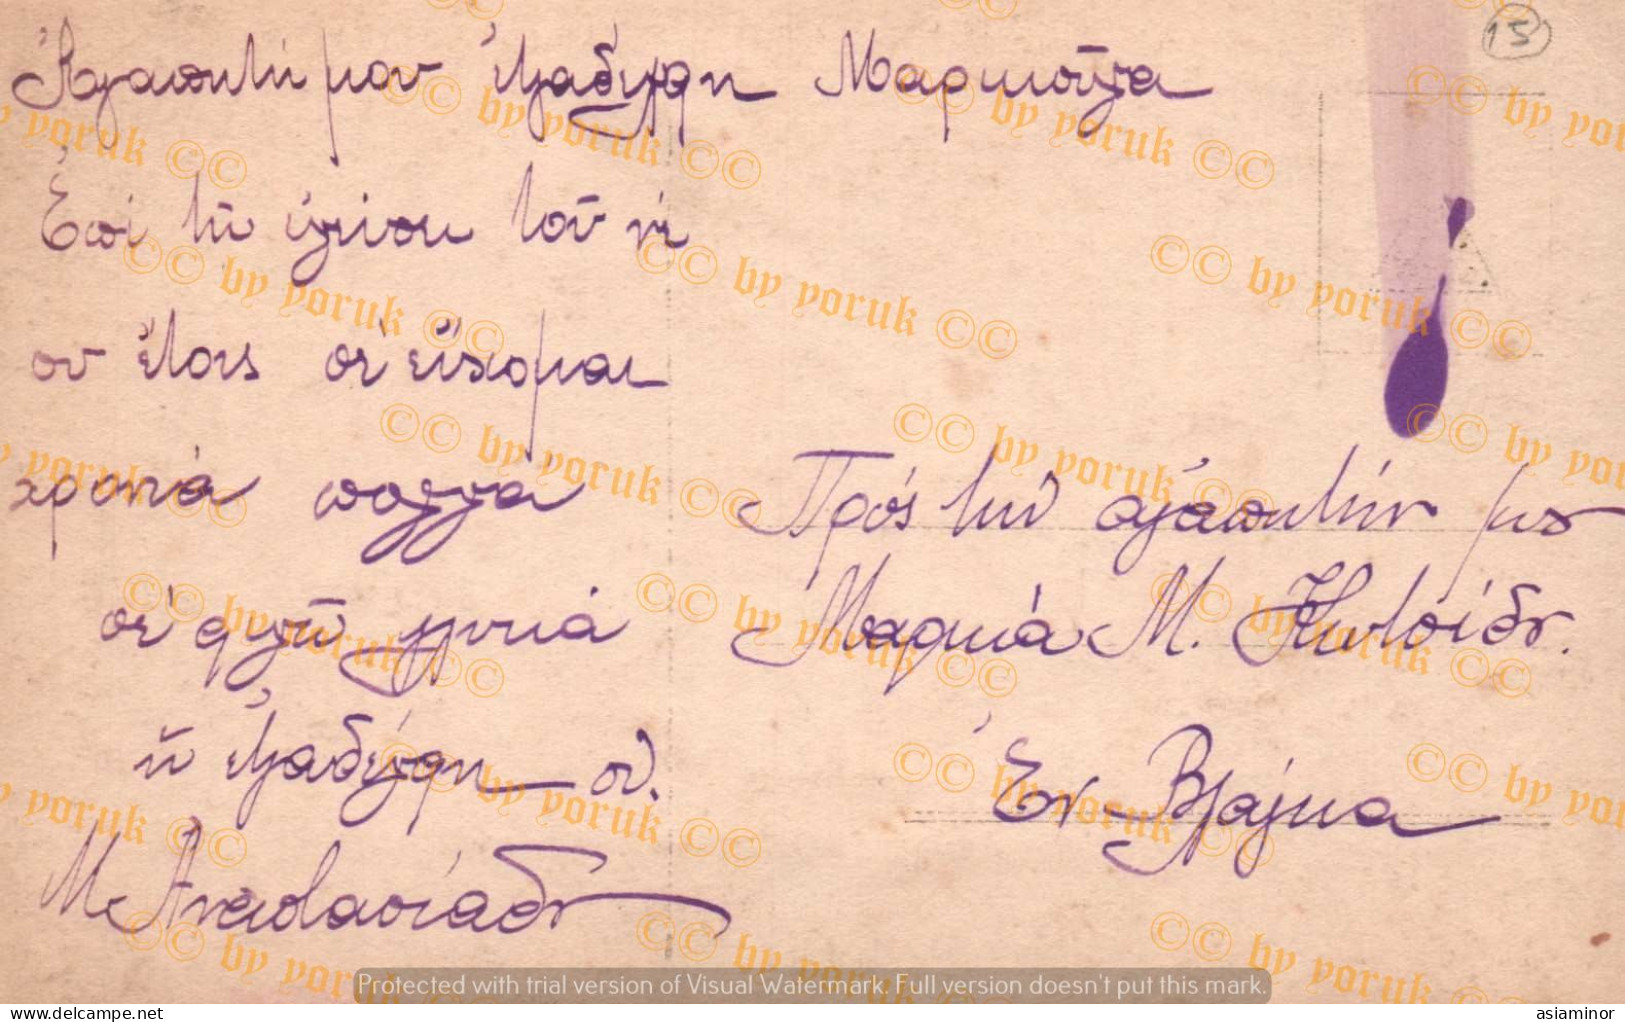 Postcard - 1920/30 - 9x14 Cm. | Fancy. Beautiful Woman Hugging The Cross. - Written In Greek On The Back. * - Vrouwen